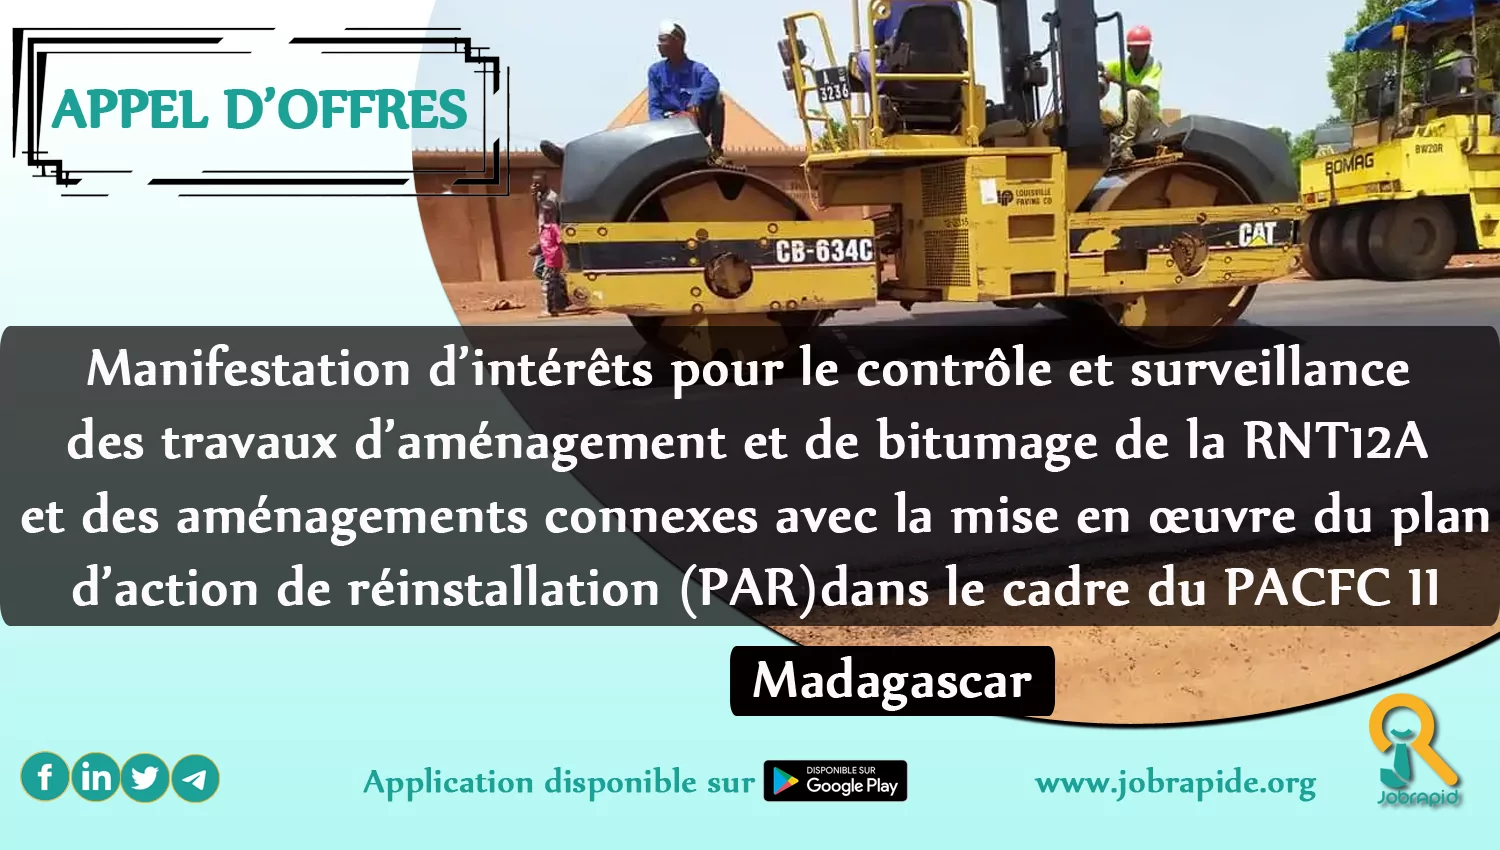 Manifestation d’intérêts pour le contrôle et surveillance des travaux d’aménagement et de bitumage de la RNT12A et des aménagements connexes avec la mise en œuvre du plan d’action de réinstallation (PAR) dans le cadre du PACFC II, Madagascar